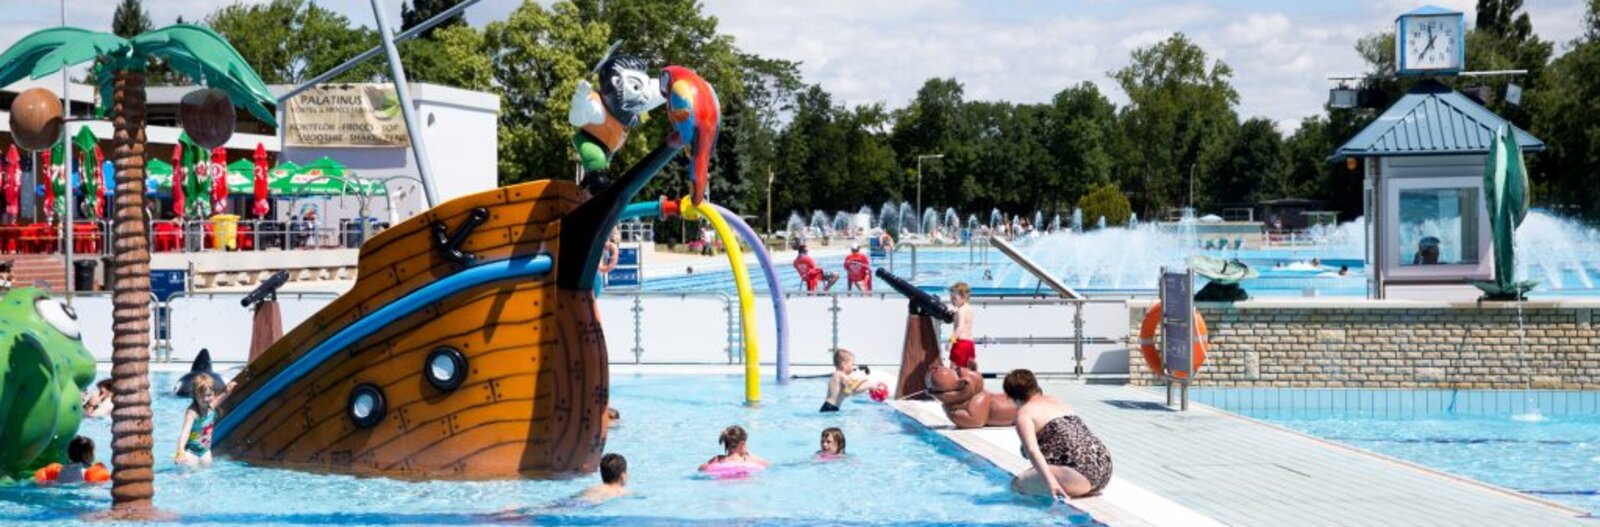 5 budapesti strand és fürdő, ahol a gyerekeket is szuper medencék, izgalmas csúszdák és játékok várják